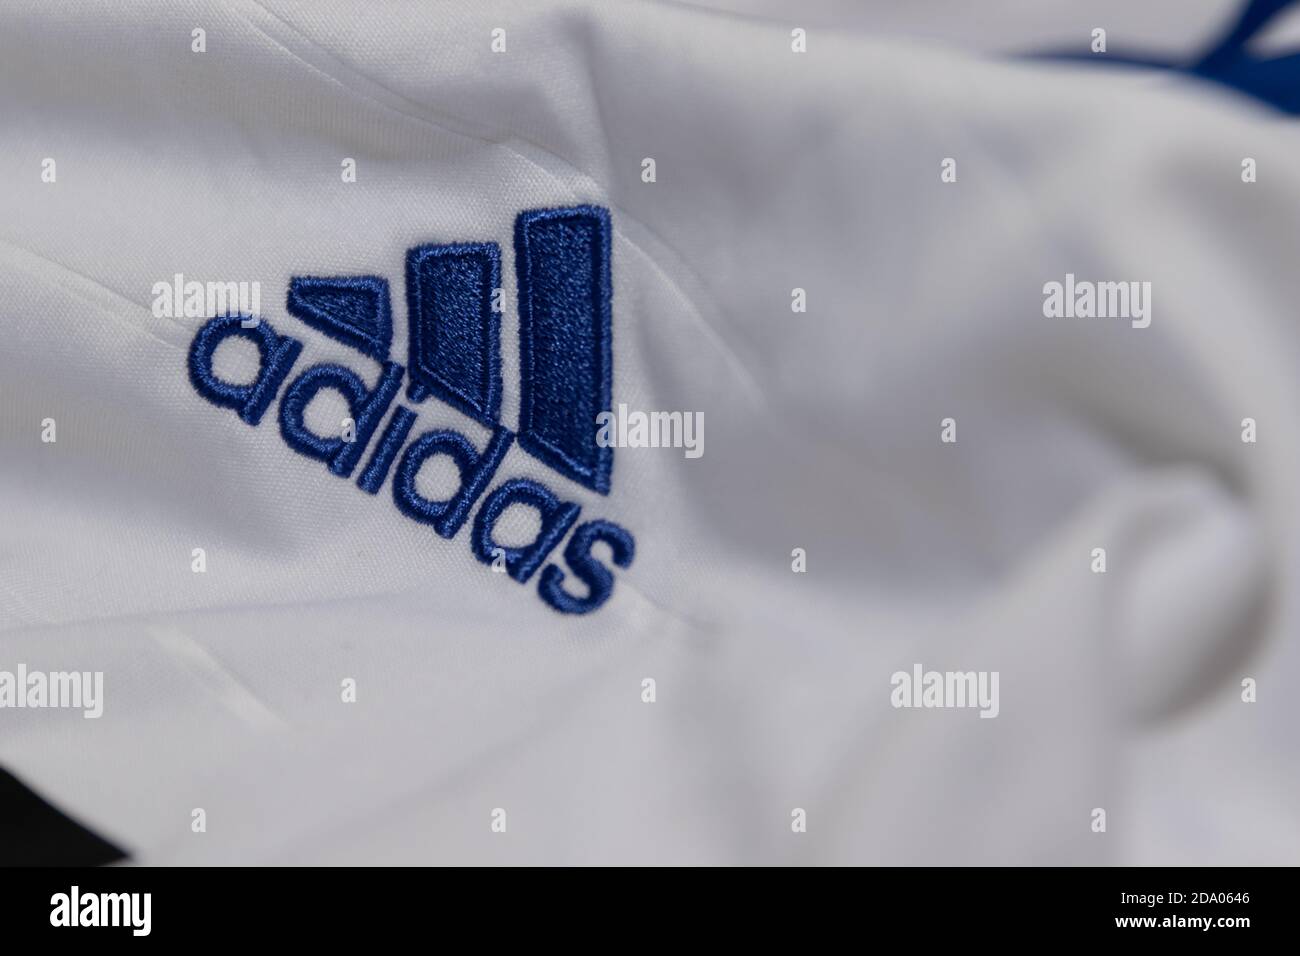 Blaues Adidas Mountain Logo auf einem weißen Fußballtrikot gestickt  Stockfotografie - Alamy